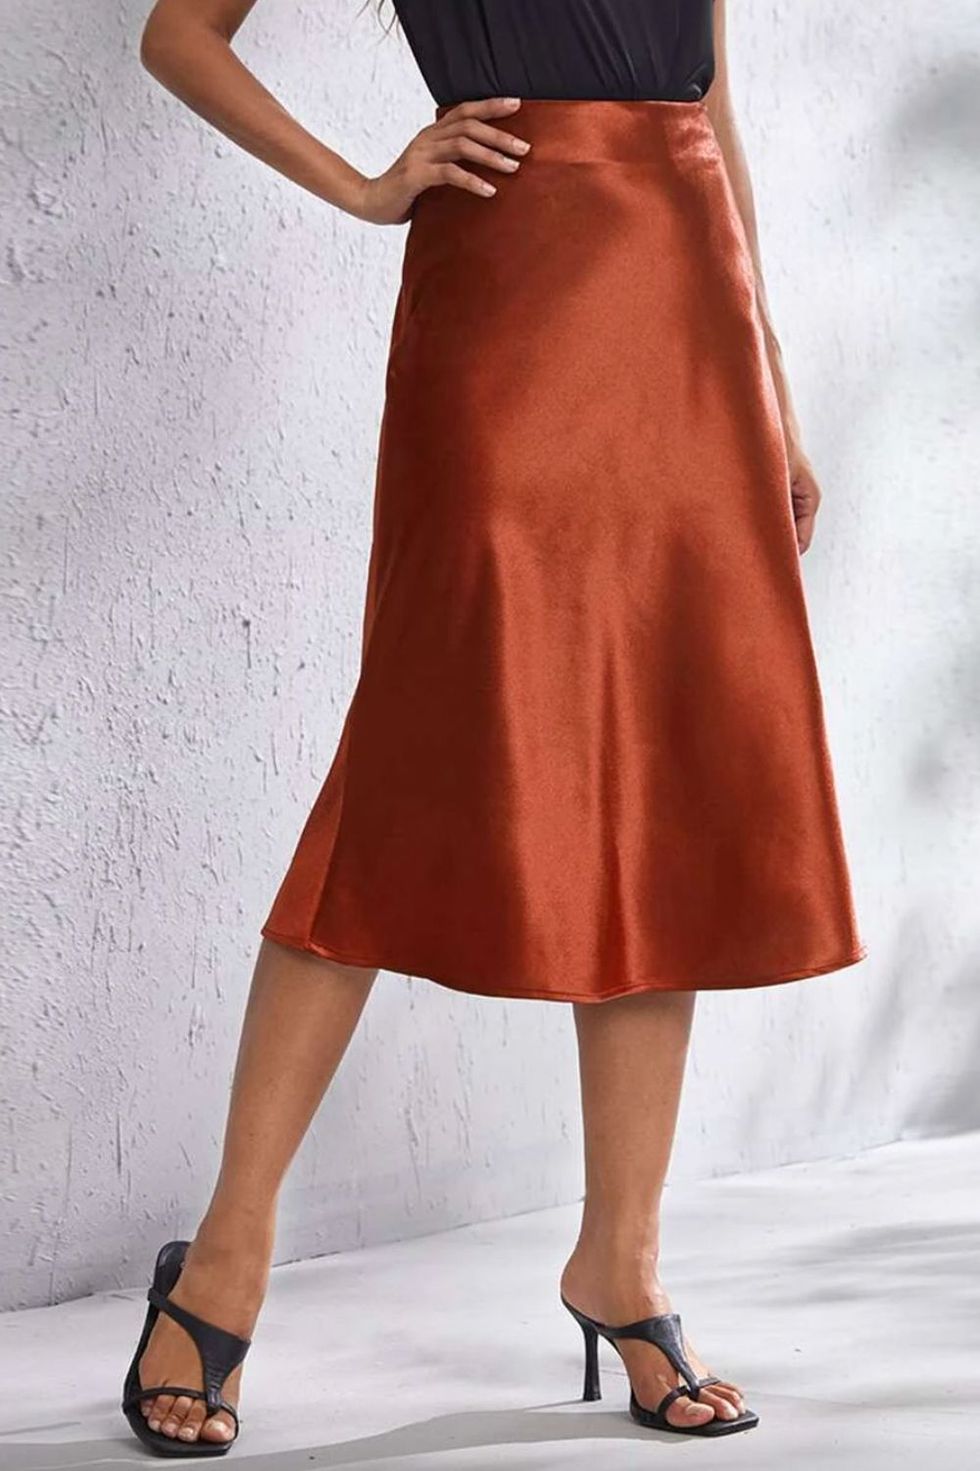 Falda roja larga elegante  Faldas, Vestir con estilo, Outfits